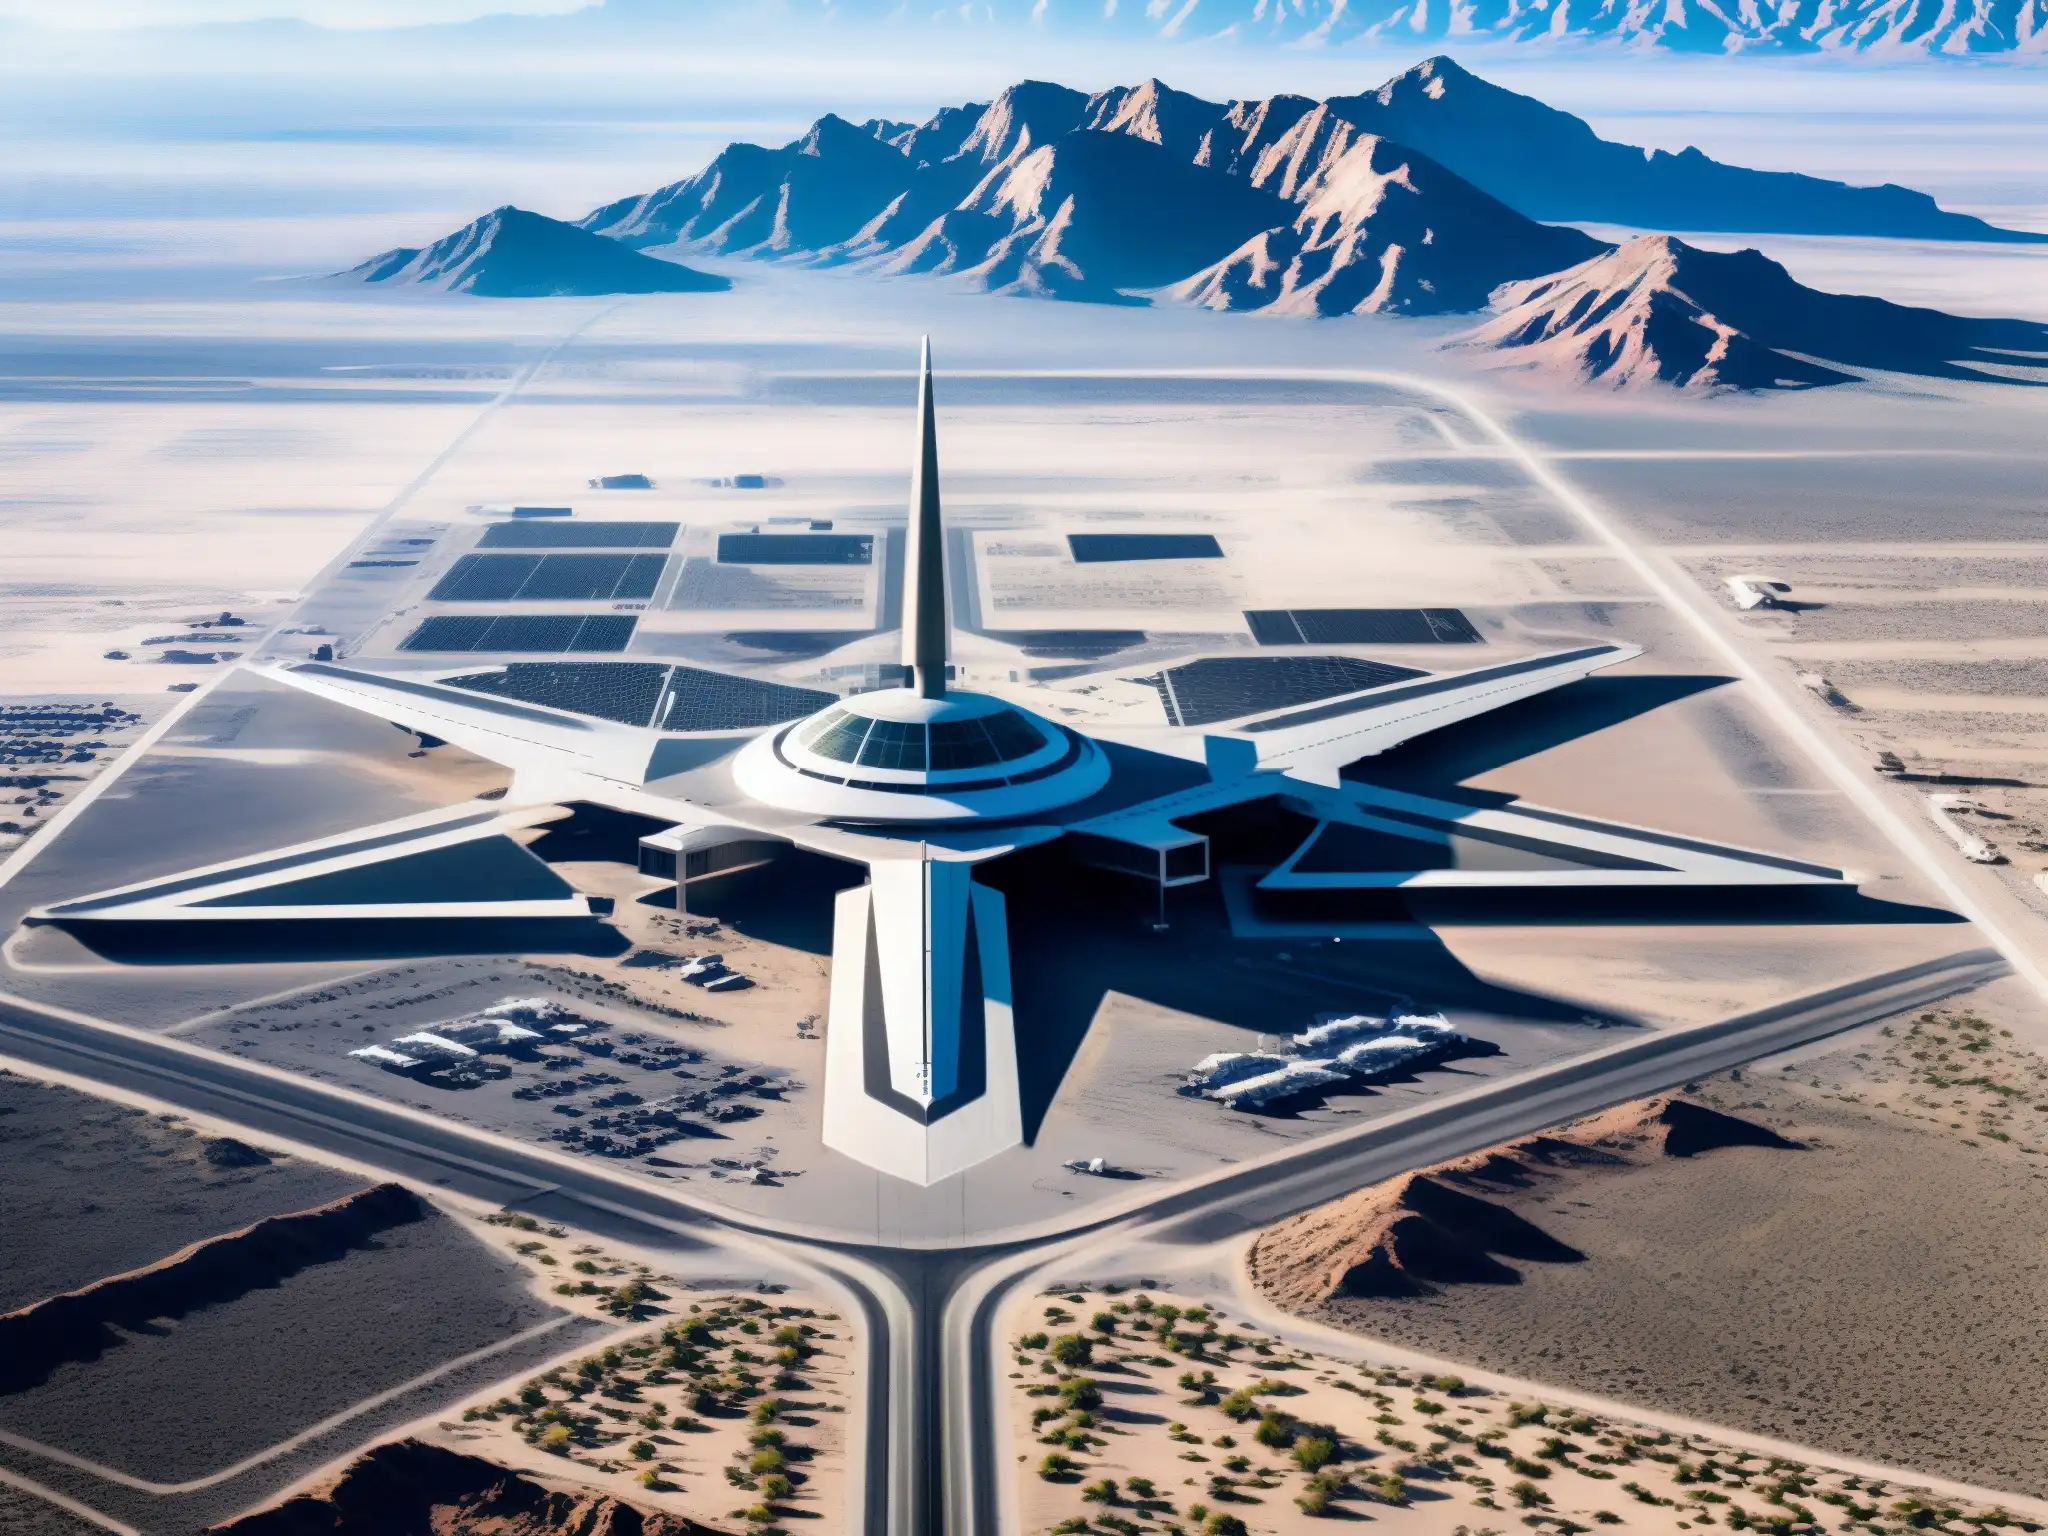 Vista aérea detallada de la base secreta Área 51, con complejo extenso en desierto